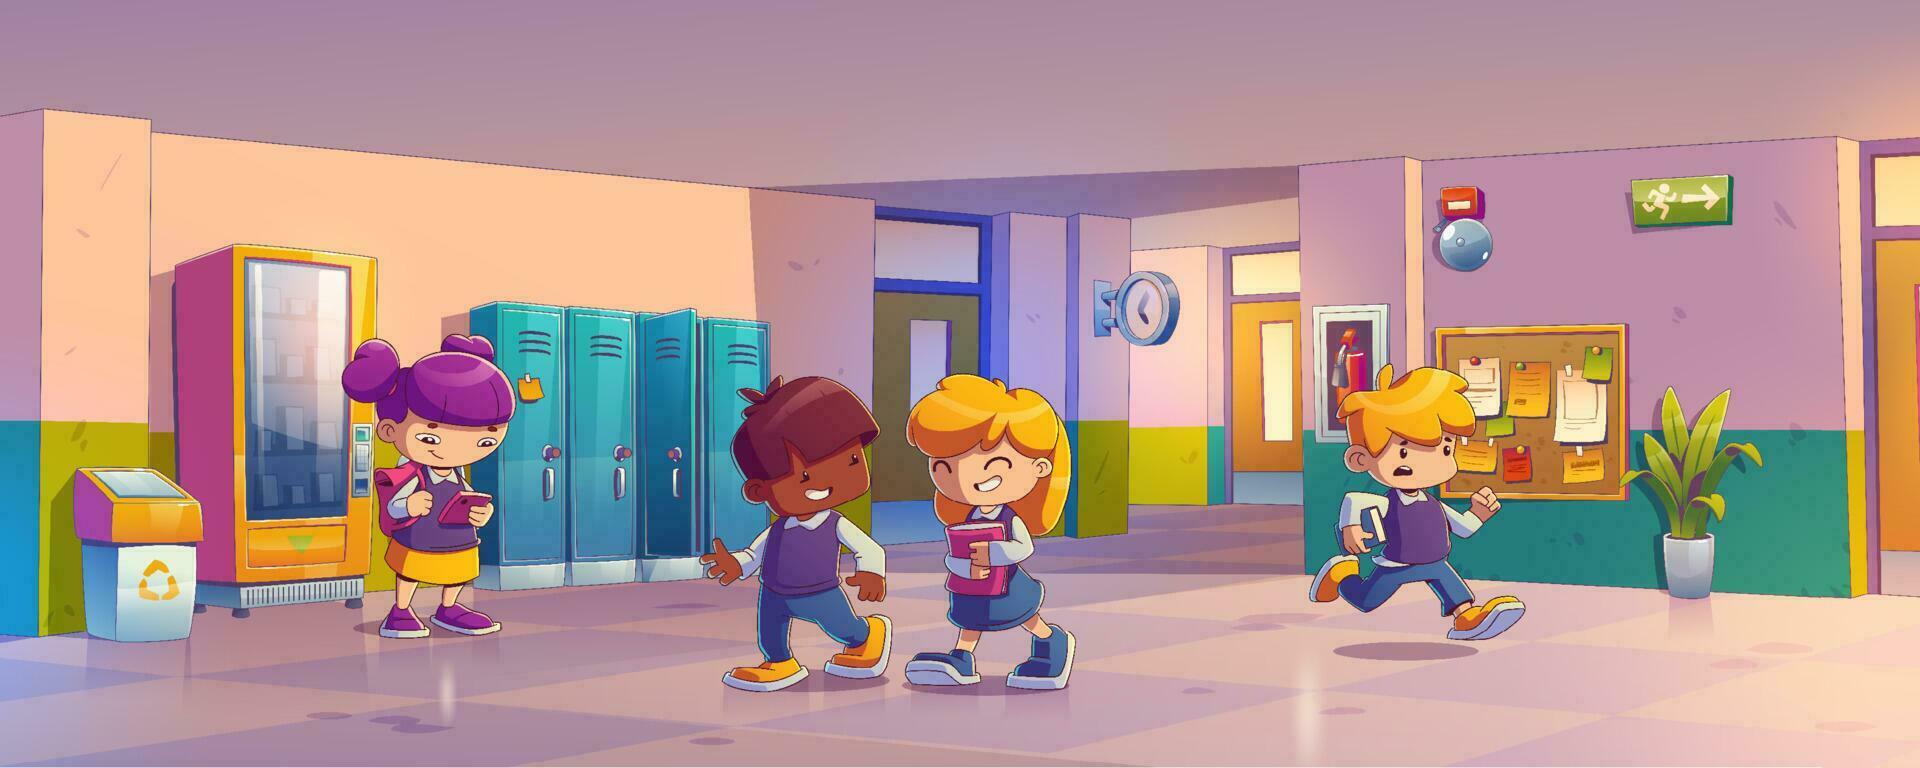 School hallway with kids in uniform, lockers vector